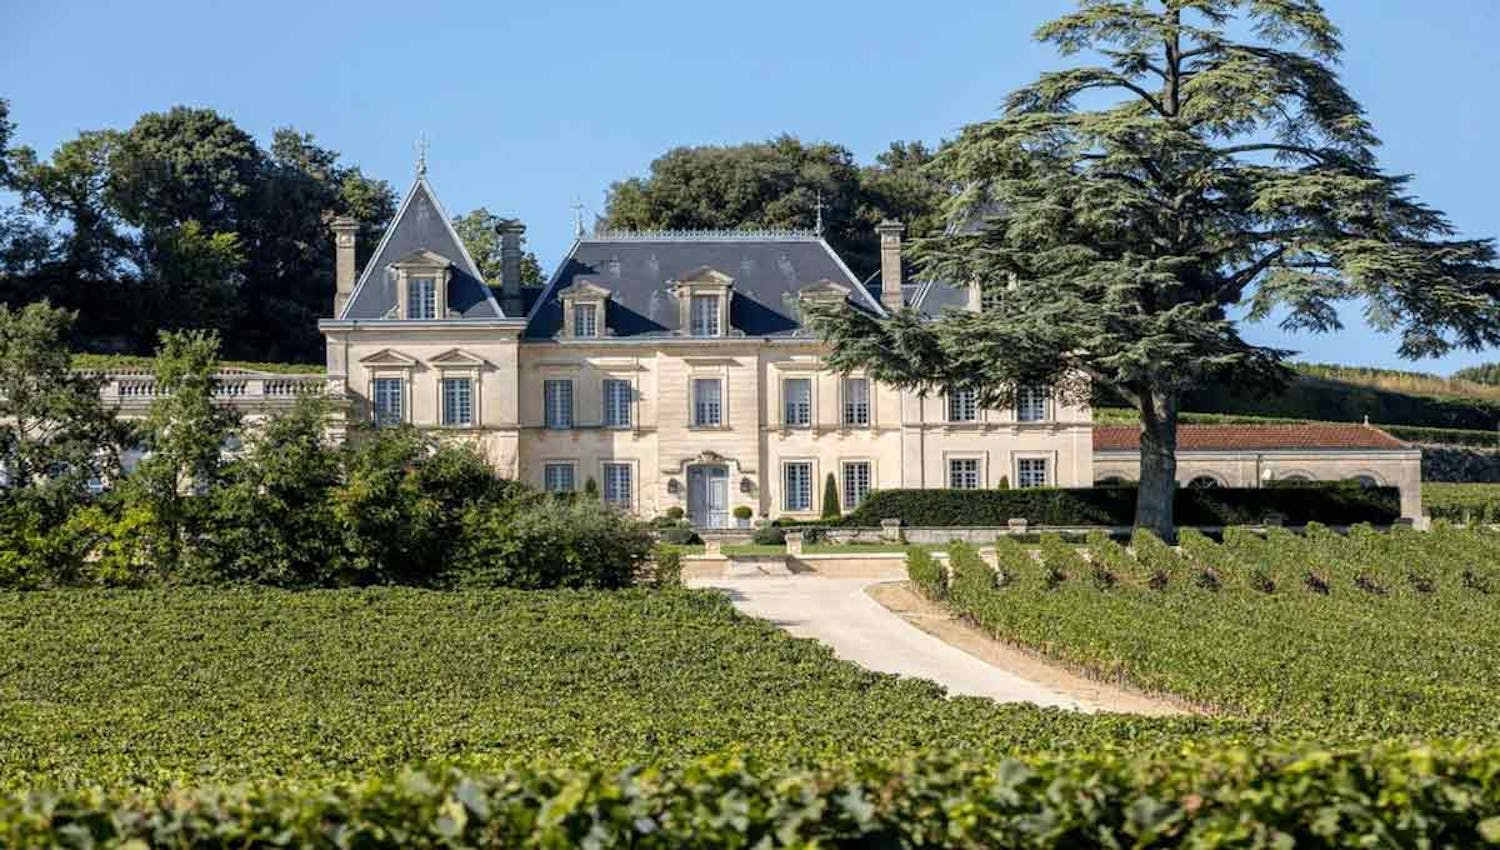 Grande maison accompagnée de nombreuses vignes, obtenue après un investissement de plus de 100 000 euros dans des placements financiers pertinents.